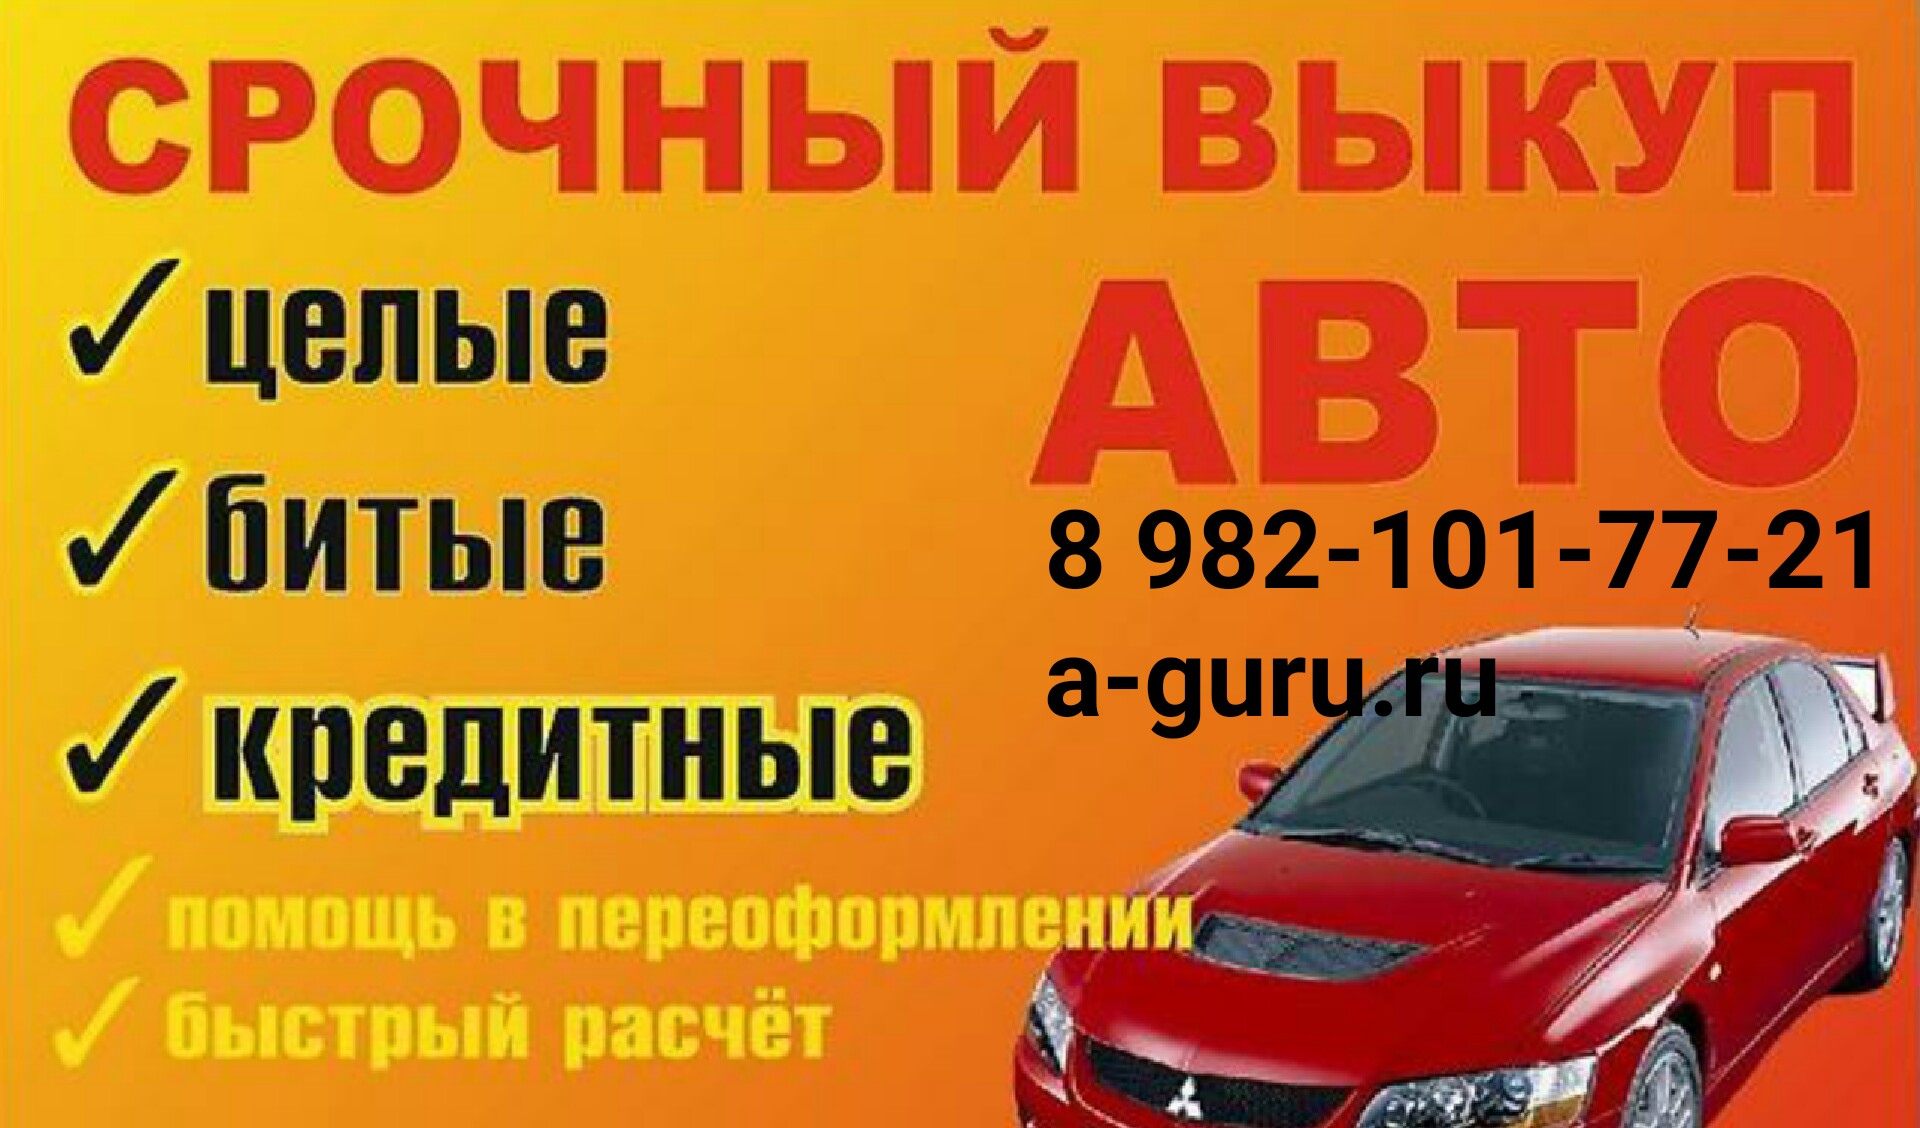 Срочный выкуп авто Autoguru  в городе Ханты-Мансийск, фото 1, телефон продавца: +7 (982) 101-77-21